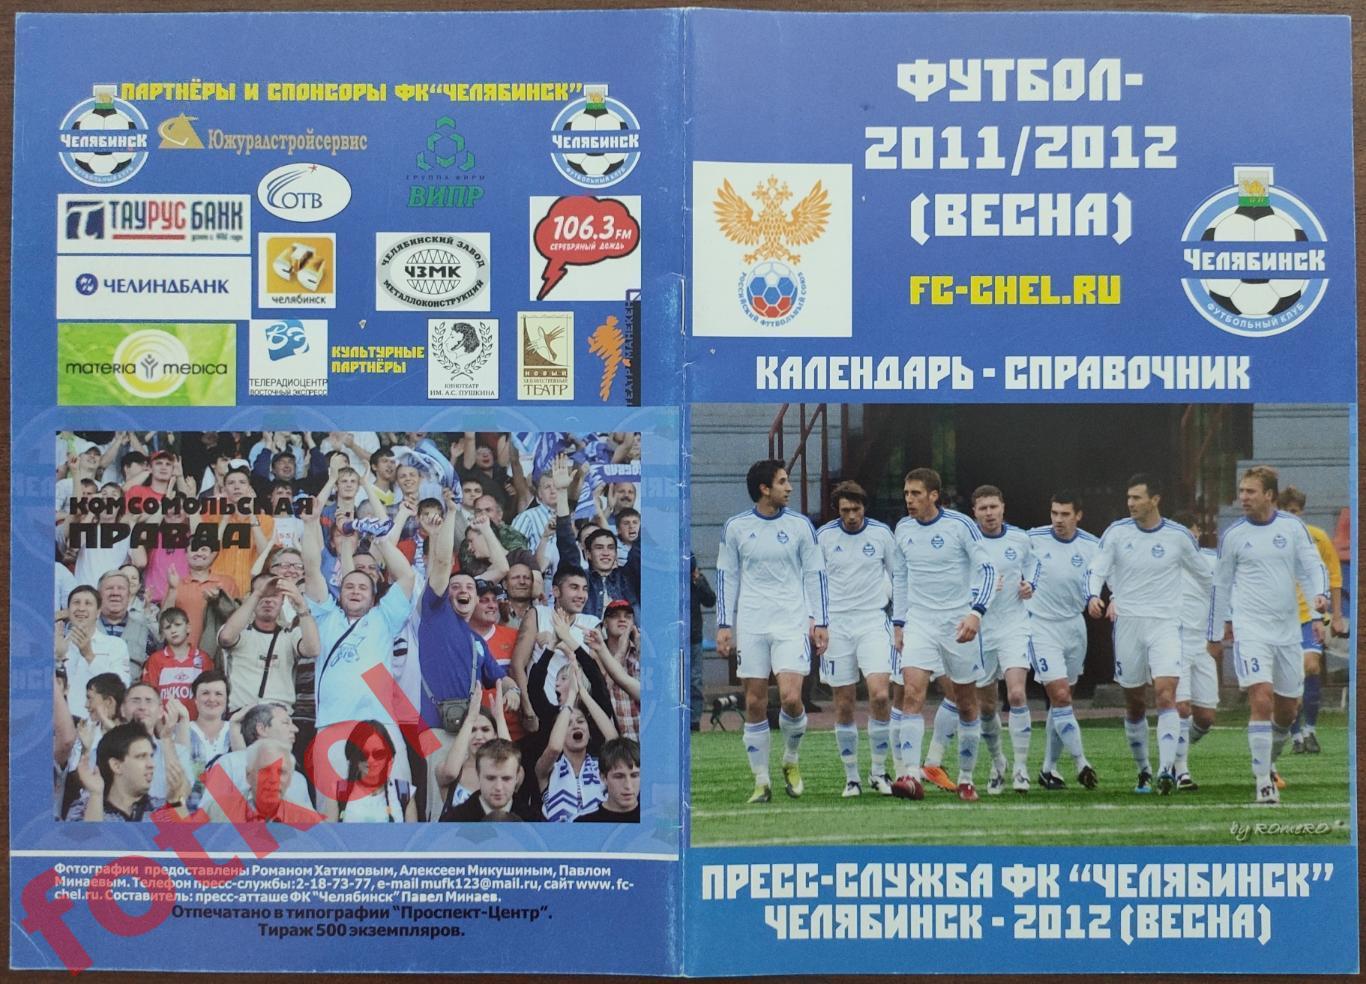 Календарь - справочник ФК ЧЕЛЯБИНСК 2011 - 2012 - ВЕСНА